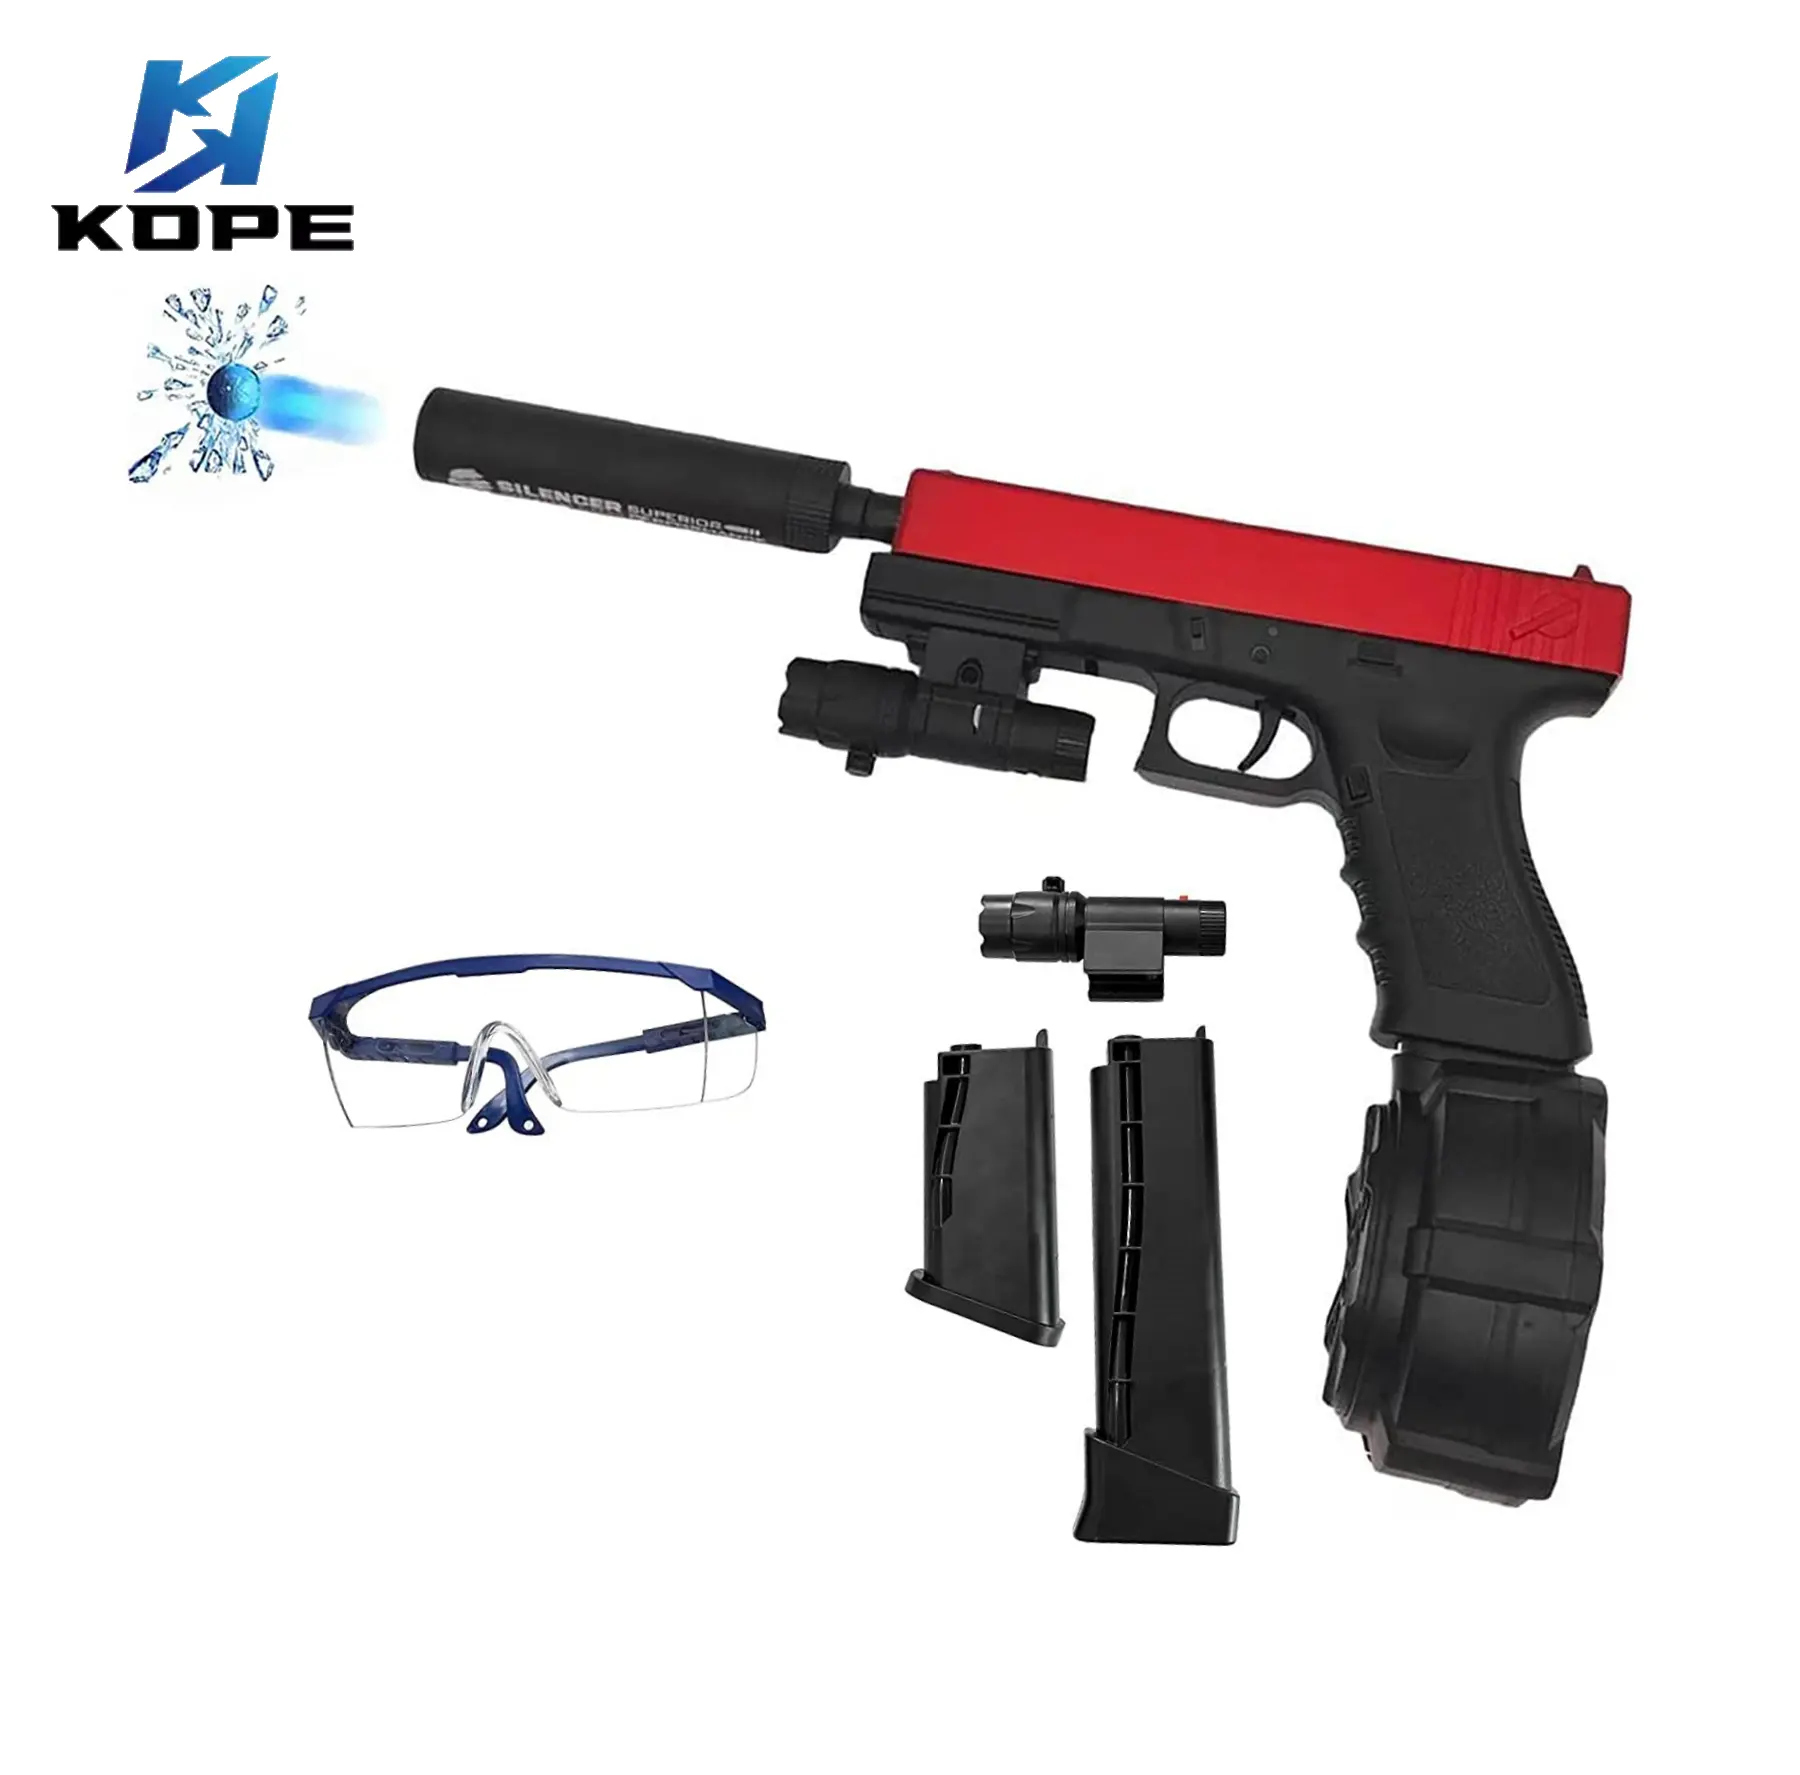 ปืนยิงลูกบอลเจลไฟฟ้า Jm-x2,ปืนฉีดน้ำลูกบอลน้ำสไตล์เดียวกันปืนของเล่นอัตโนมัติสำหรับเกมยิงปืน